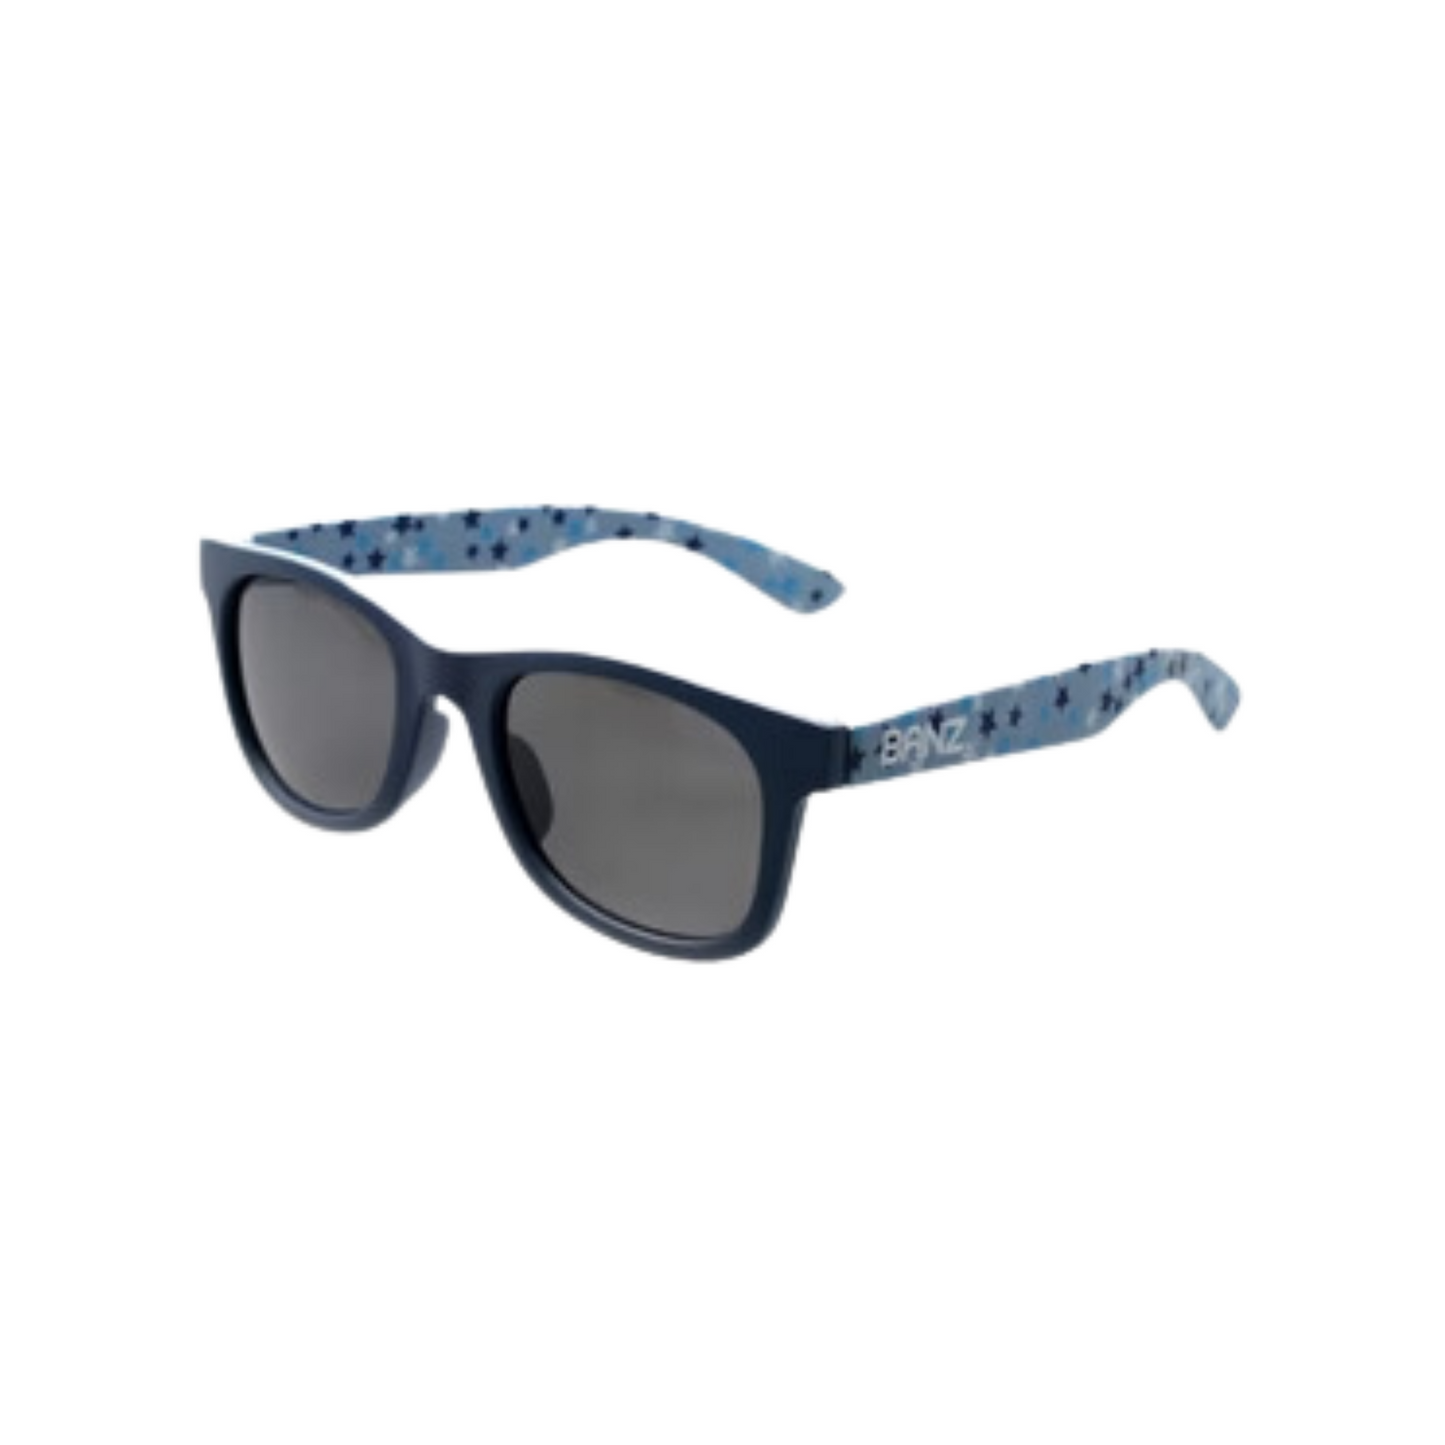 Banz Beachcomber Sunglasses for Kids